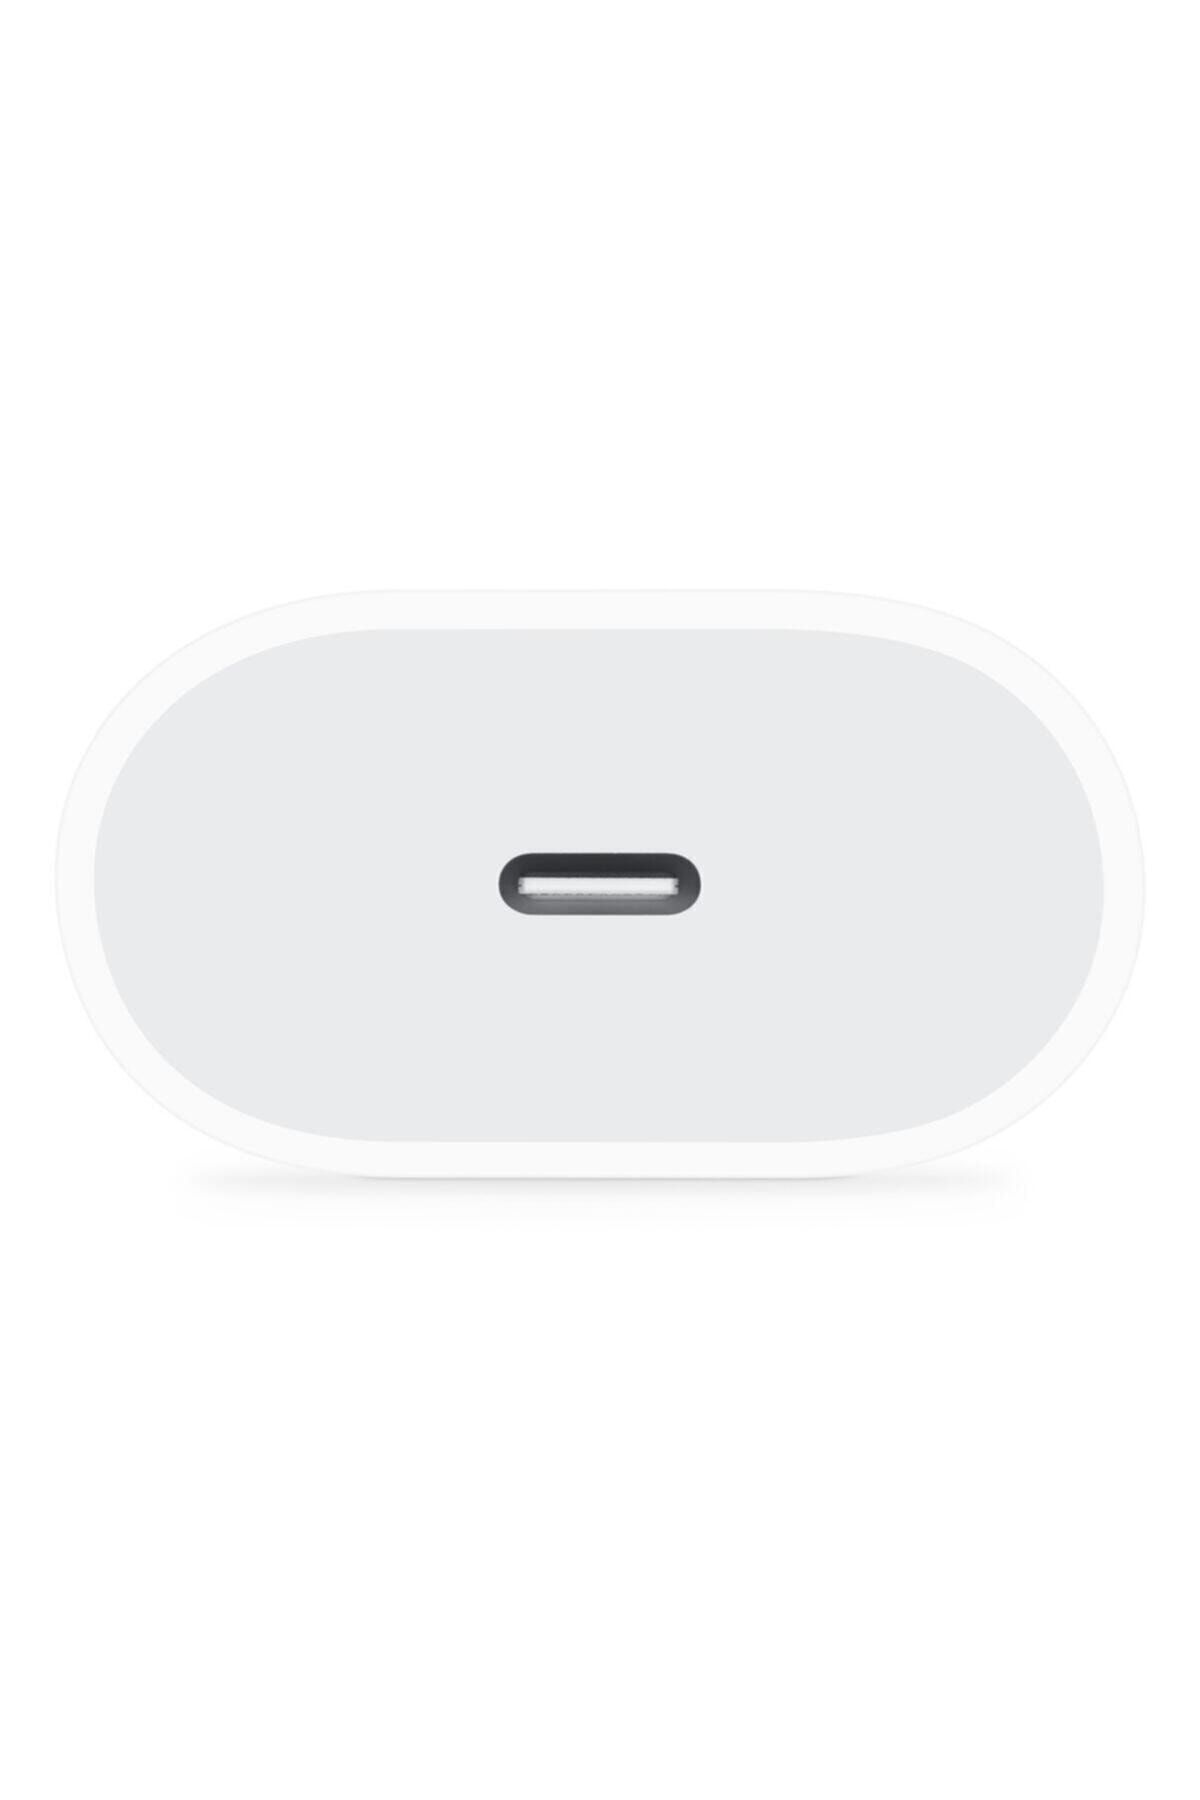 Apple Iphone 11/11 Pro Max Için Hızlı Şarj Aleti Seti 18w Adaptör + Usb-c Kablo